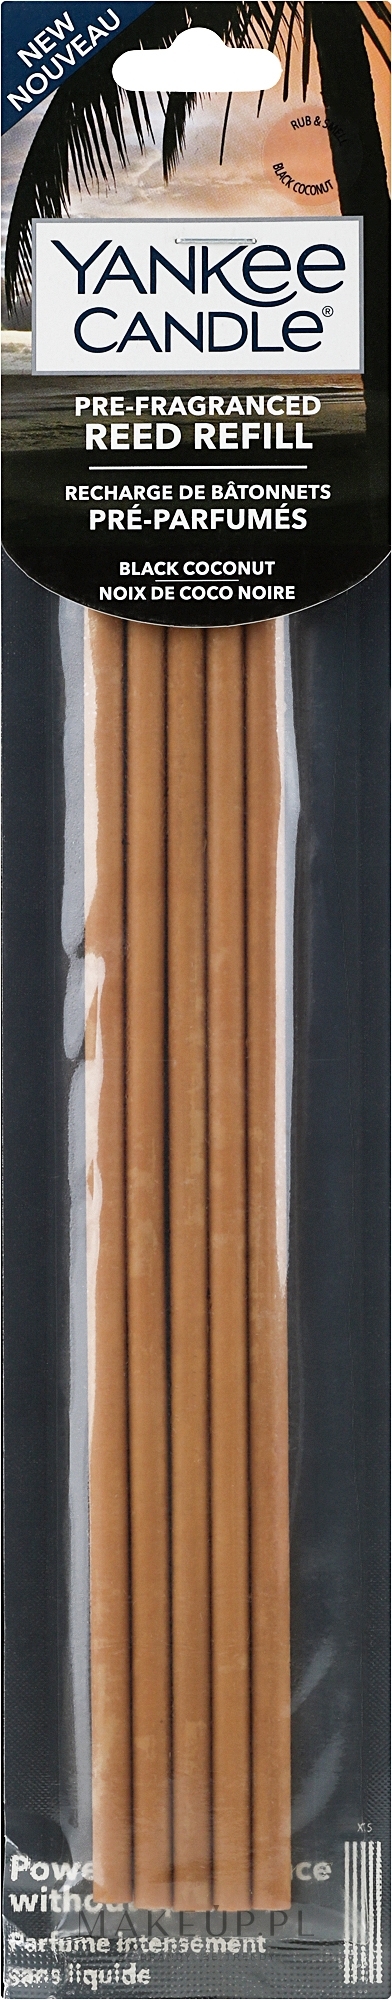 Patyczki zapachowe Kokos - Yankee Candle Black Coconut Pre-Fragranced Reed Refill — Zdjęcie 5 szt.